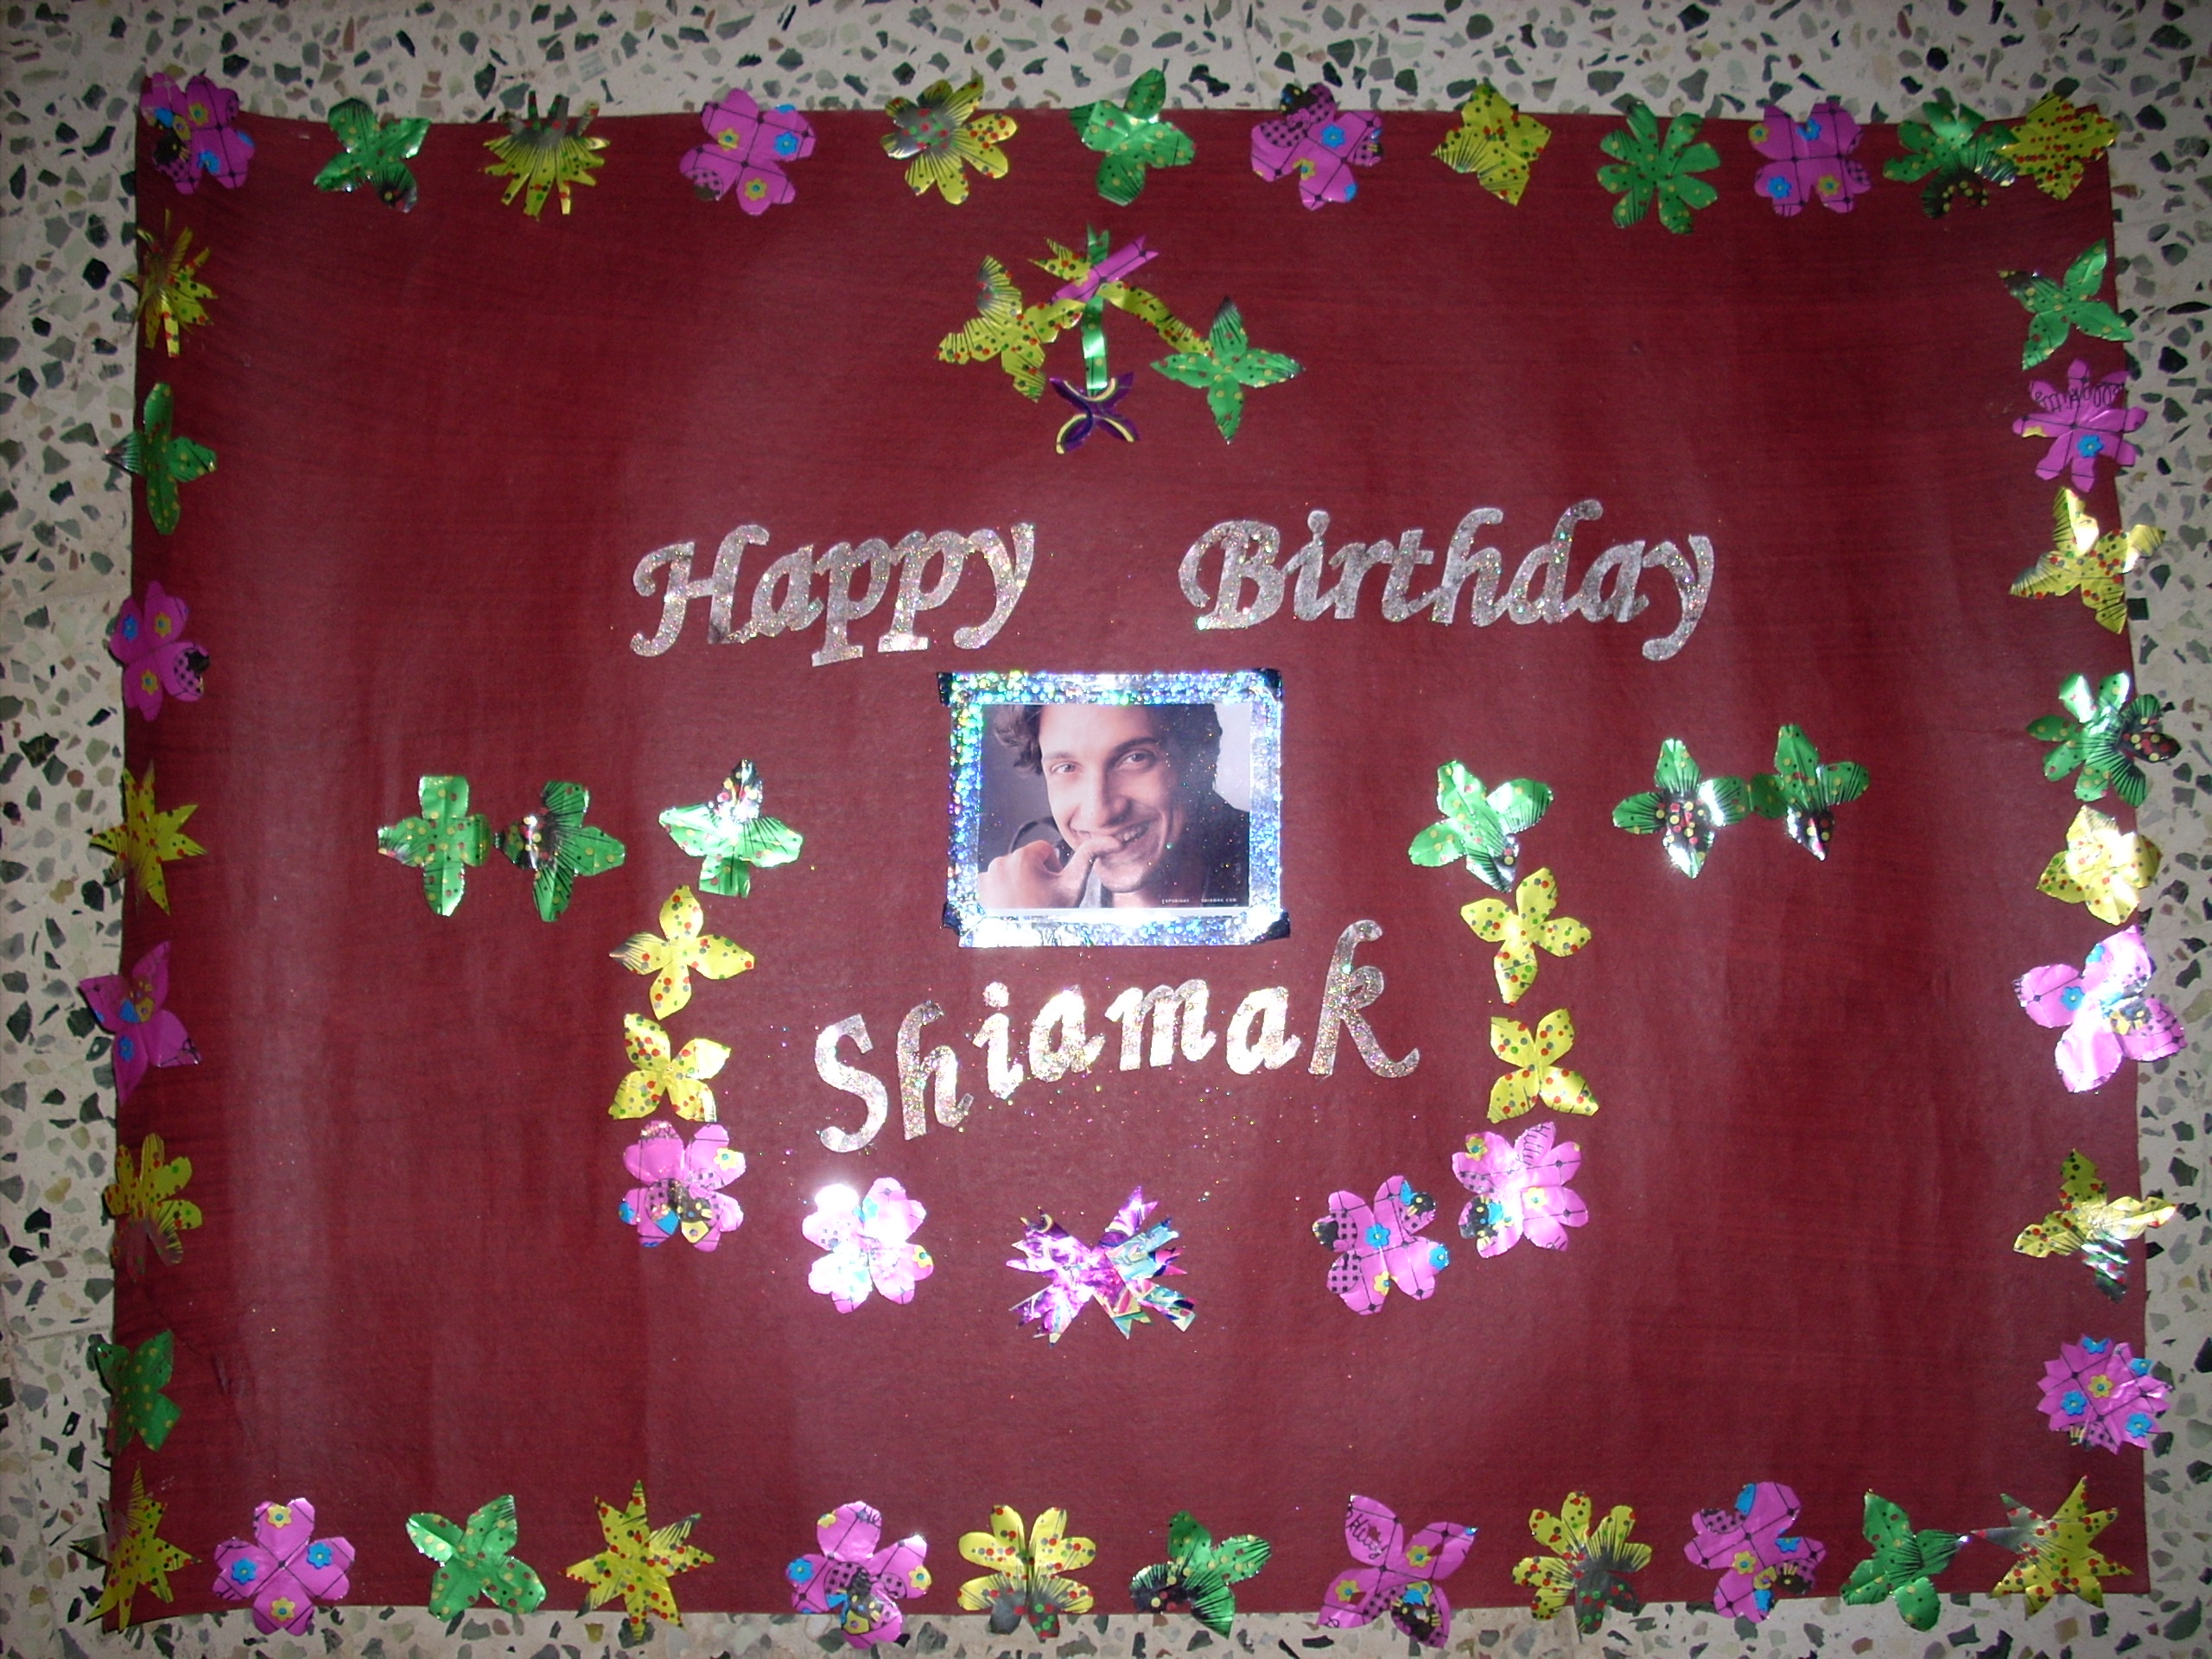 Happy Birthday Shiamak